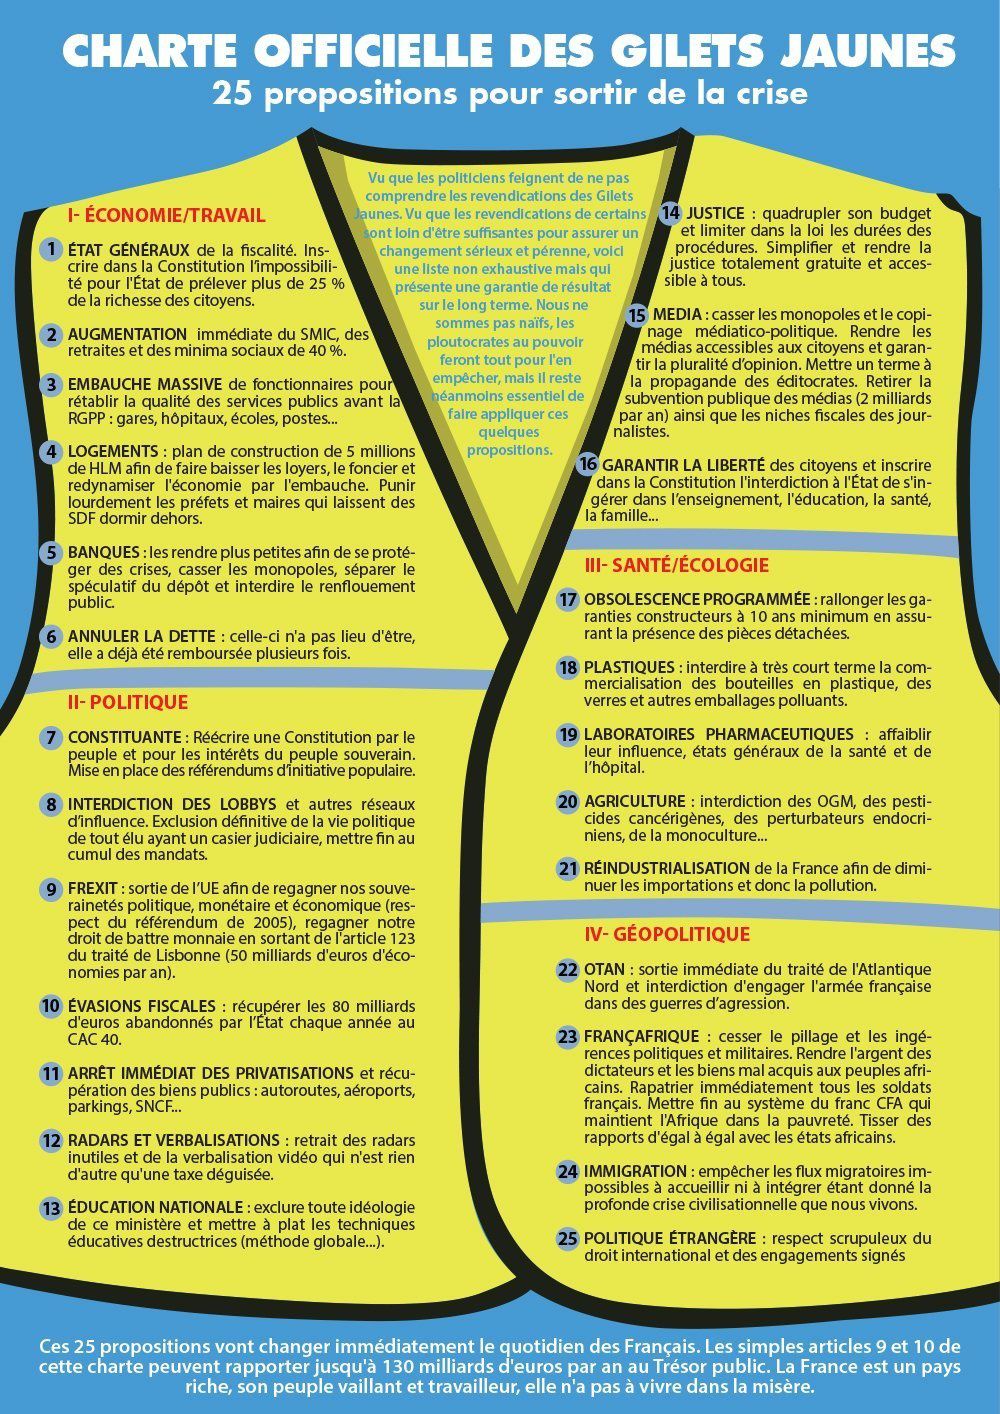 L'une des listes de revendications des Gilets jaunes qui circulent sur la toile : la Charte des Gilets jaunes, publiée sur la page Facebook éponyme depuis le 5 décembre 2018.